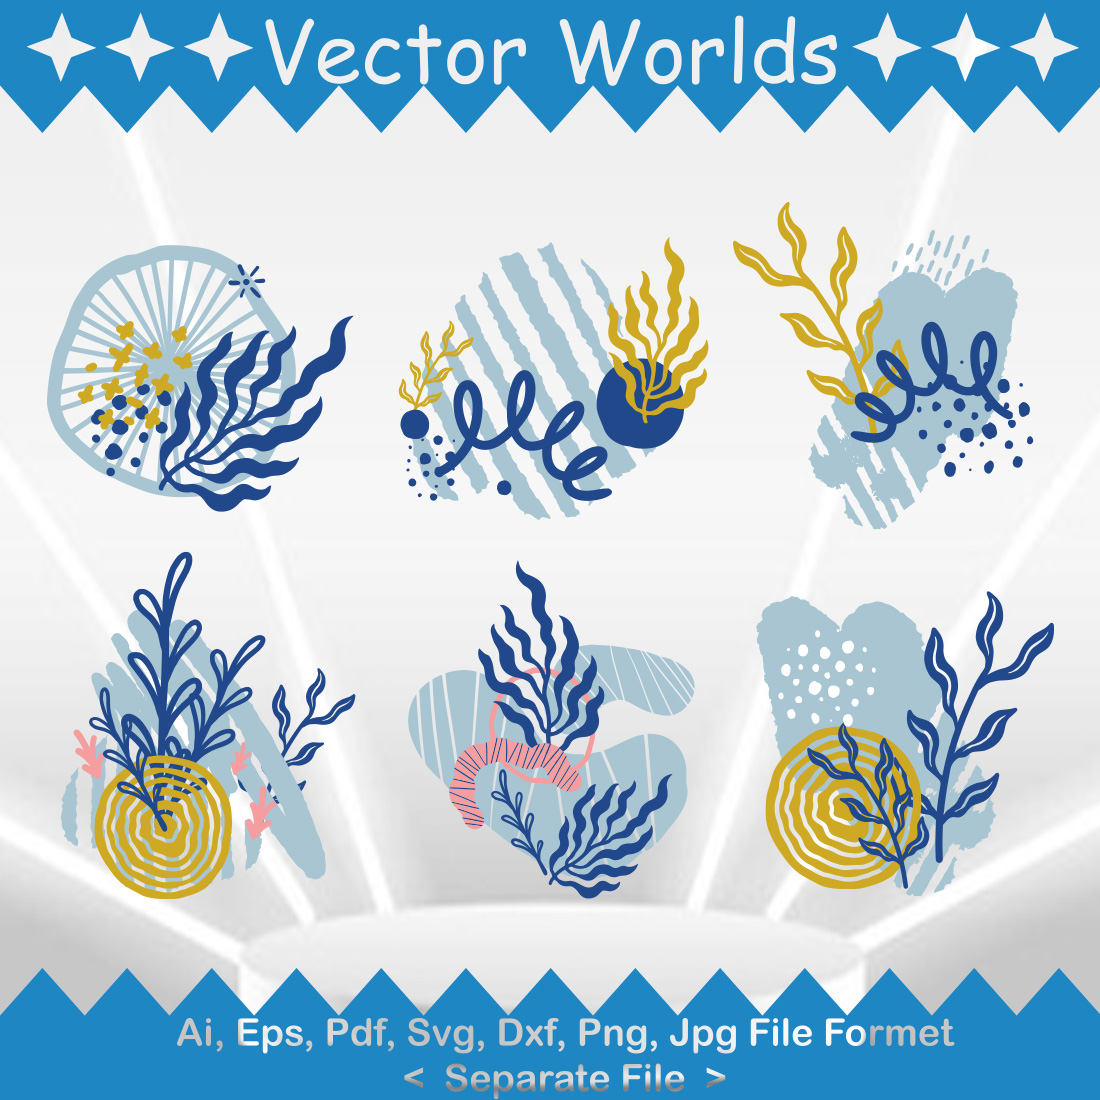 Leaf Brush SVG Vector Design cover image.